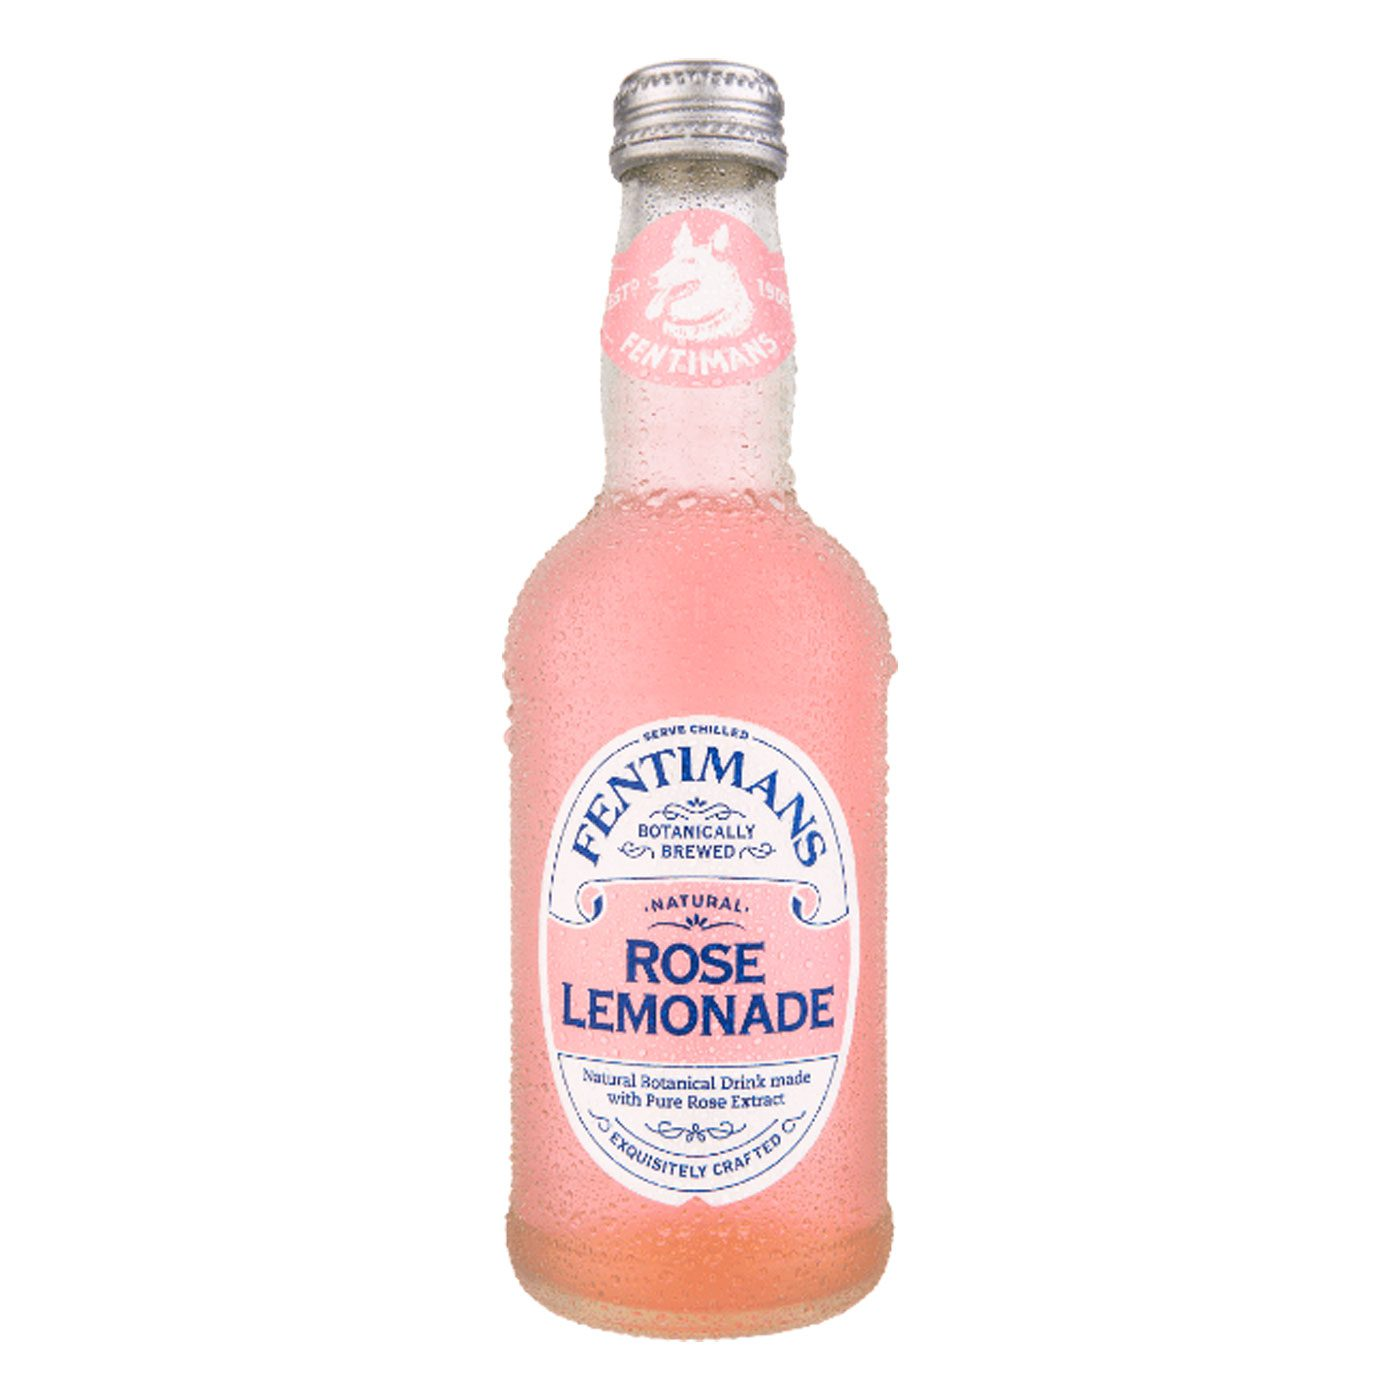 Rose Lemonade 21341B